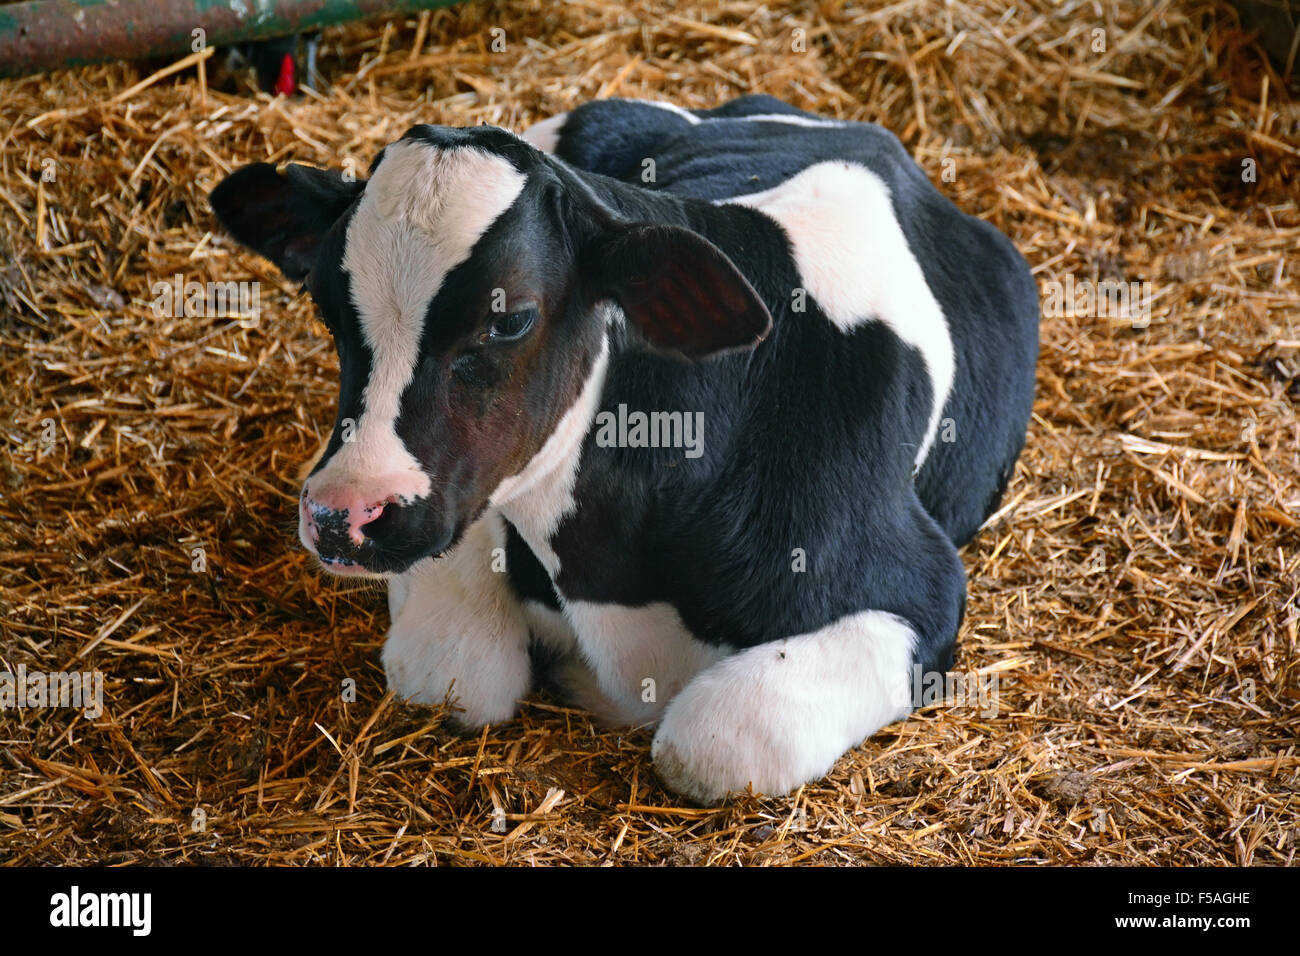 Calf,cow Stock Photo